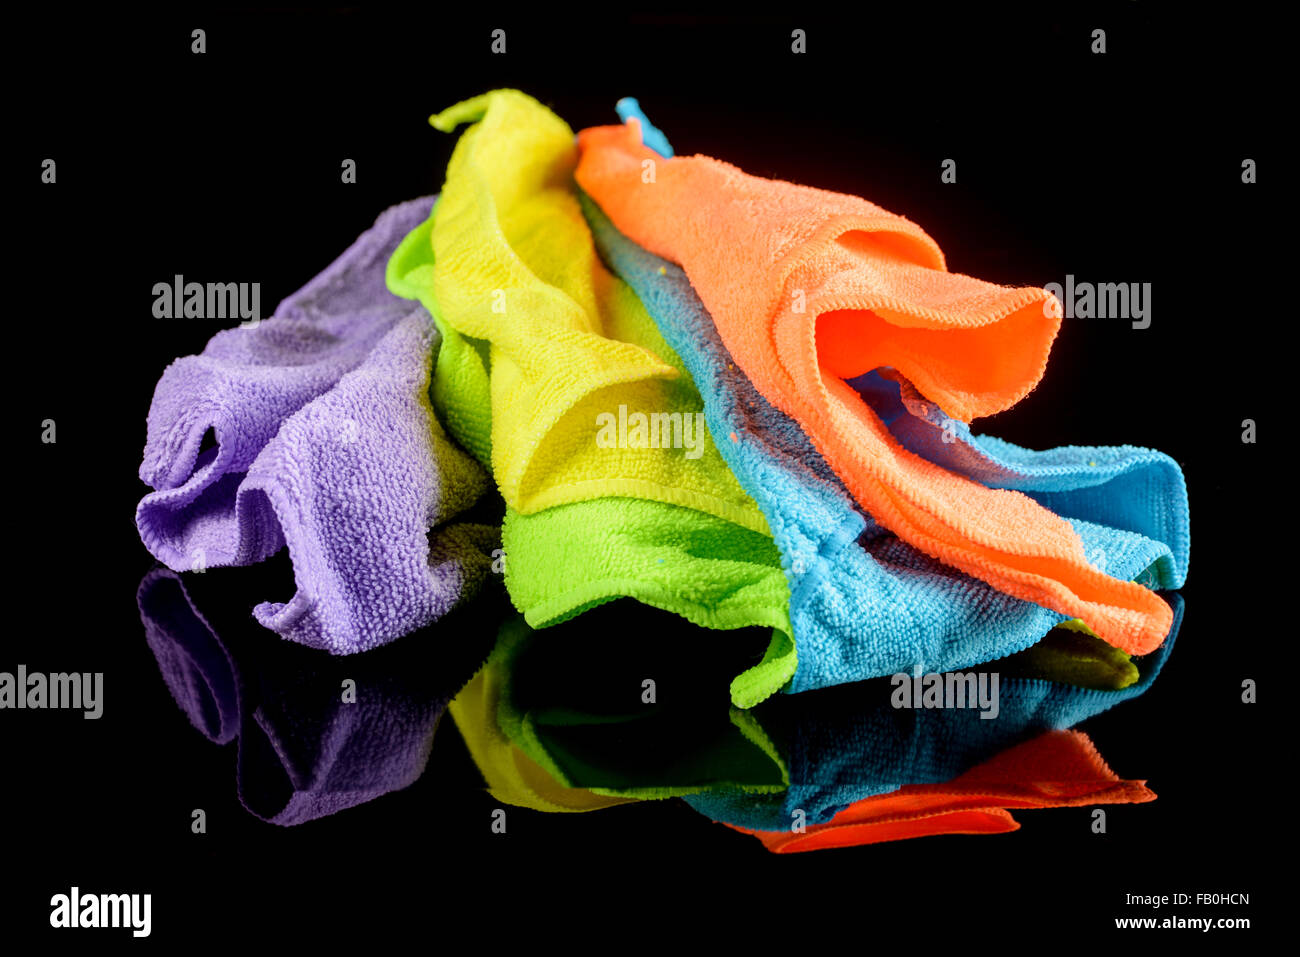 Set de chiffons en microfibre de couleur Banque D'Images